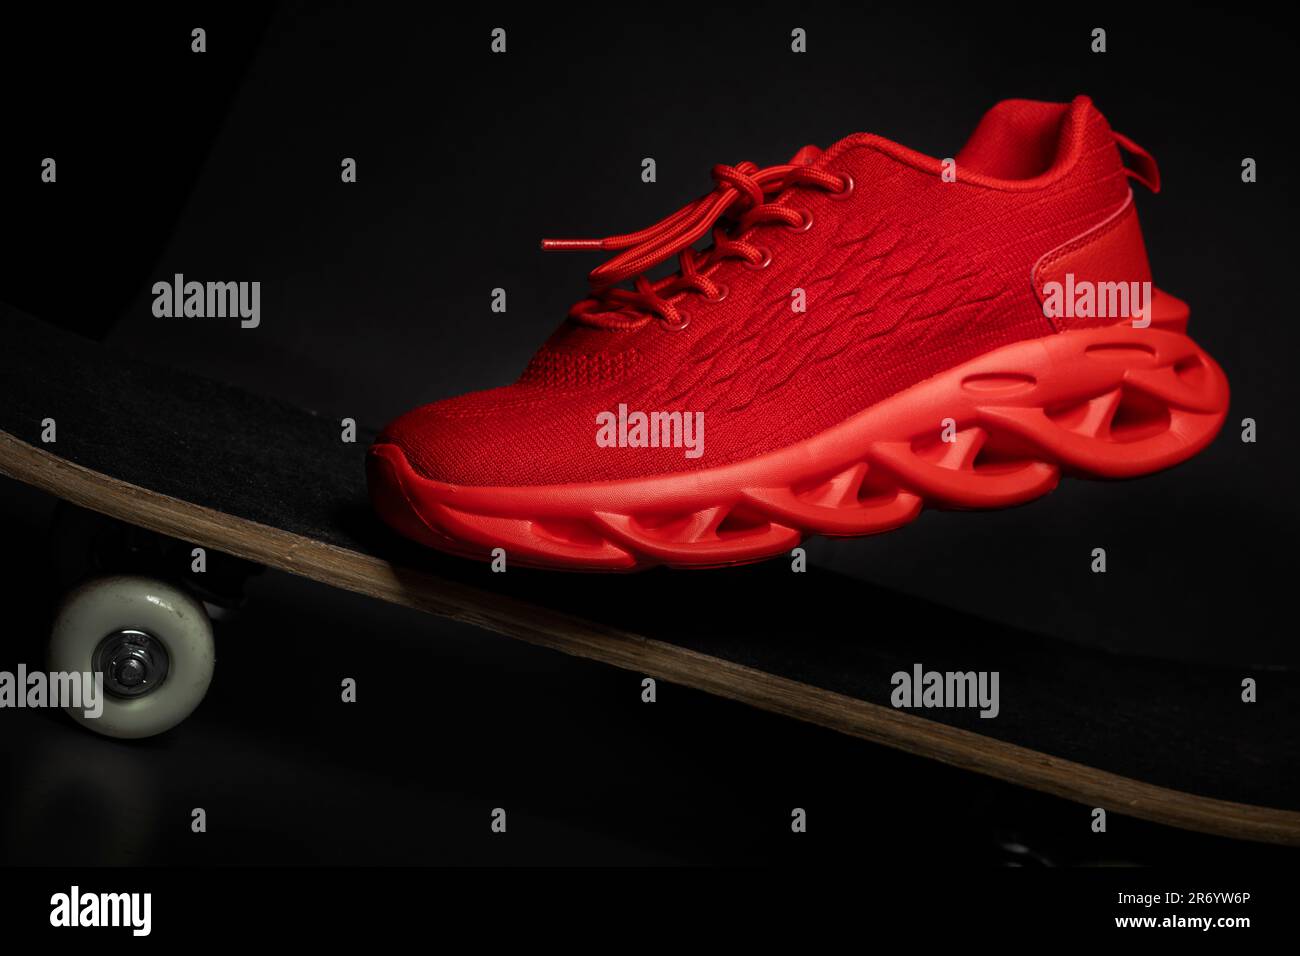 Roter Sneaker aus Stoff auf einer Nahaufnahme des Skateboards  Stockfotografie - Alamy